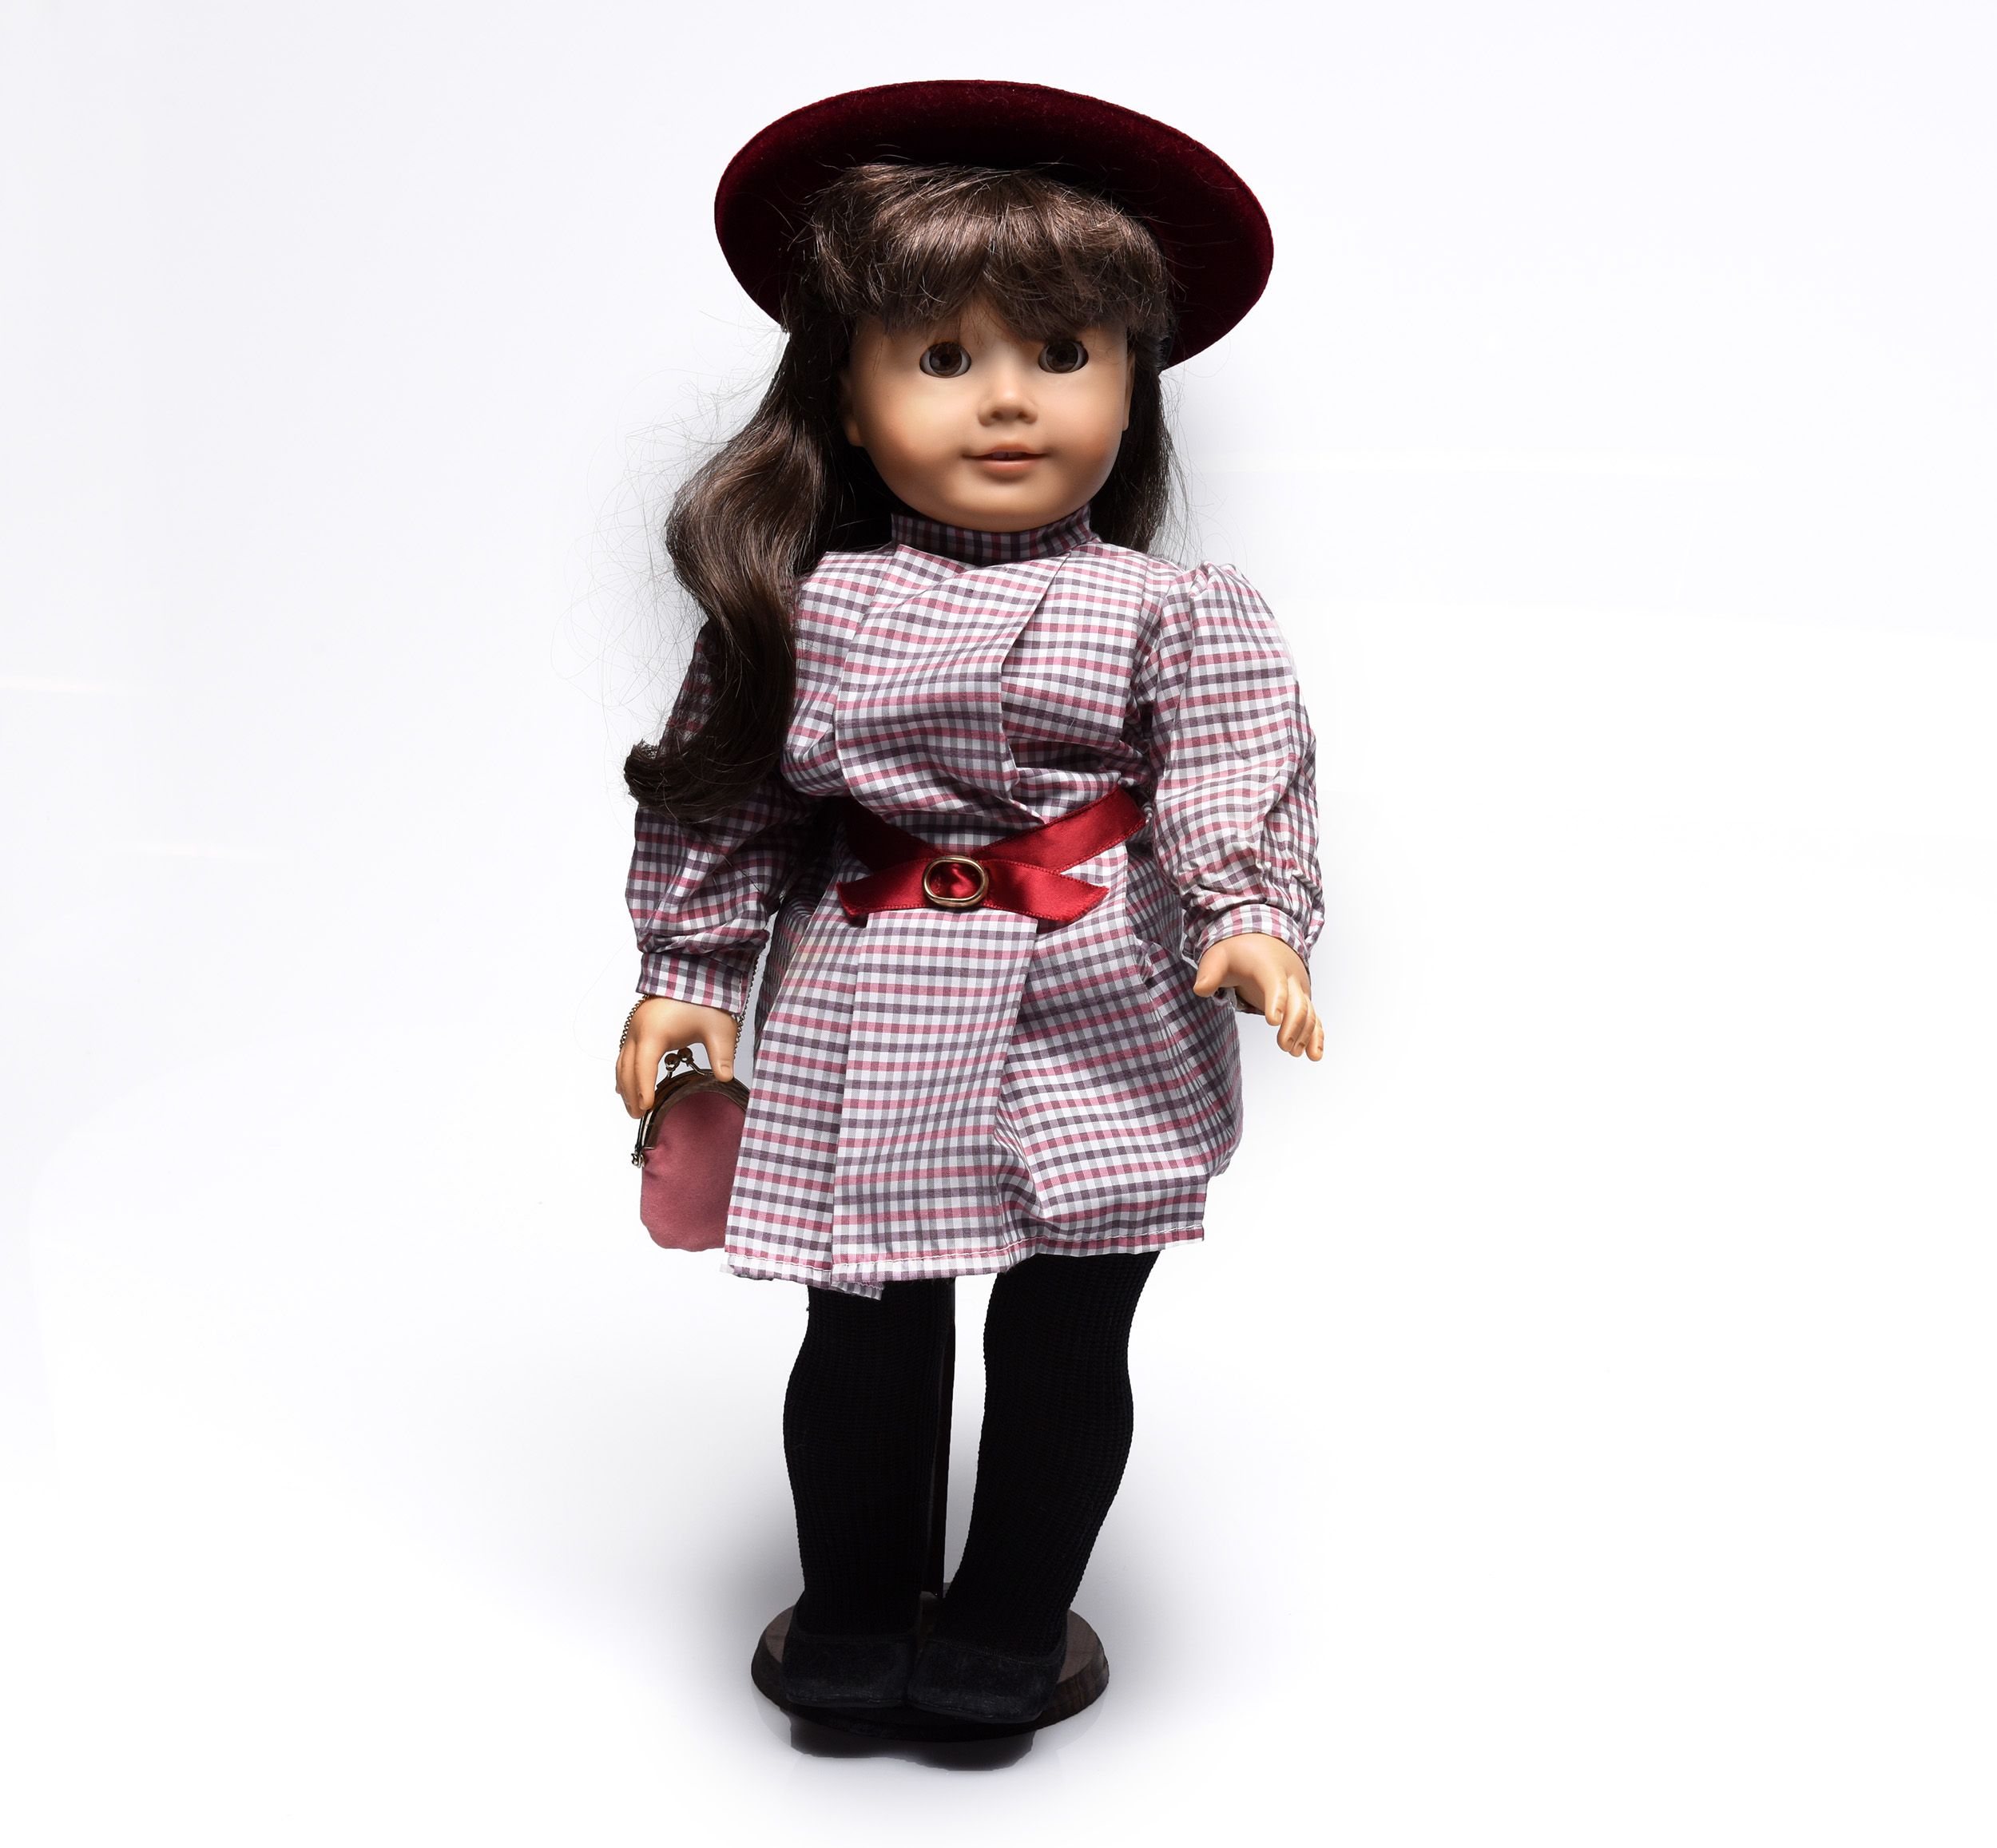 crolly dolls for sale on ebay